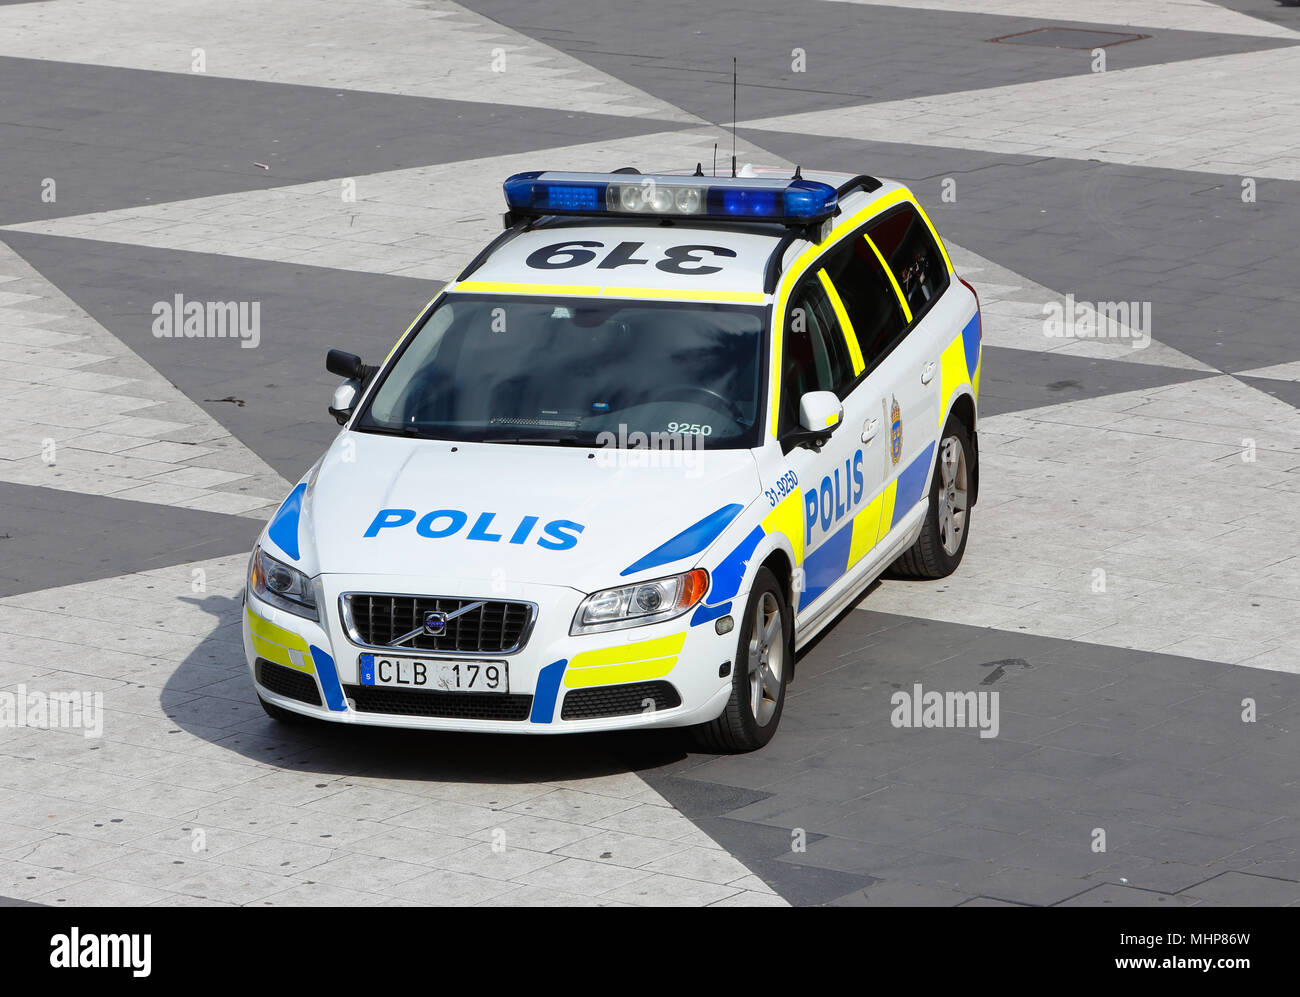 Stockholm, Schweden, 24. Juni 2014: Schwedische Polizei Auto Volvo V70, Fahrzeug Jahr 2011, an der Sergel Torg in Stockholm geparkt. Stockfoto